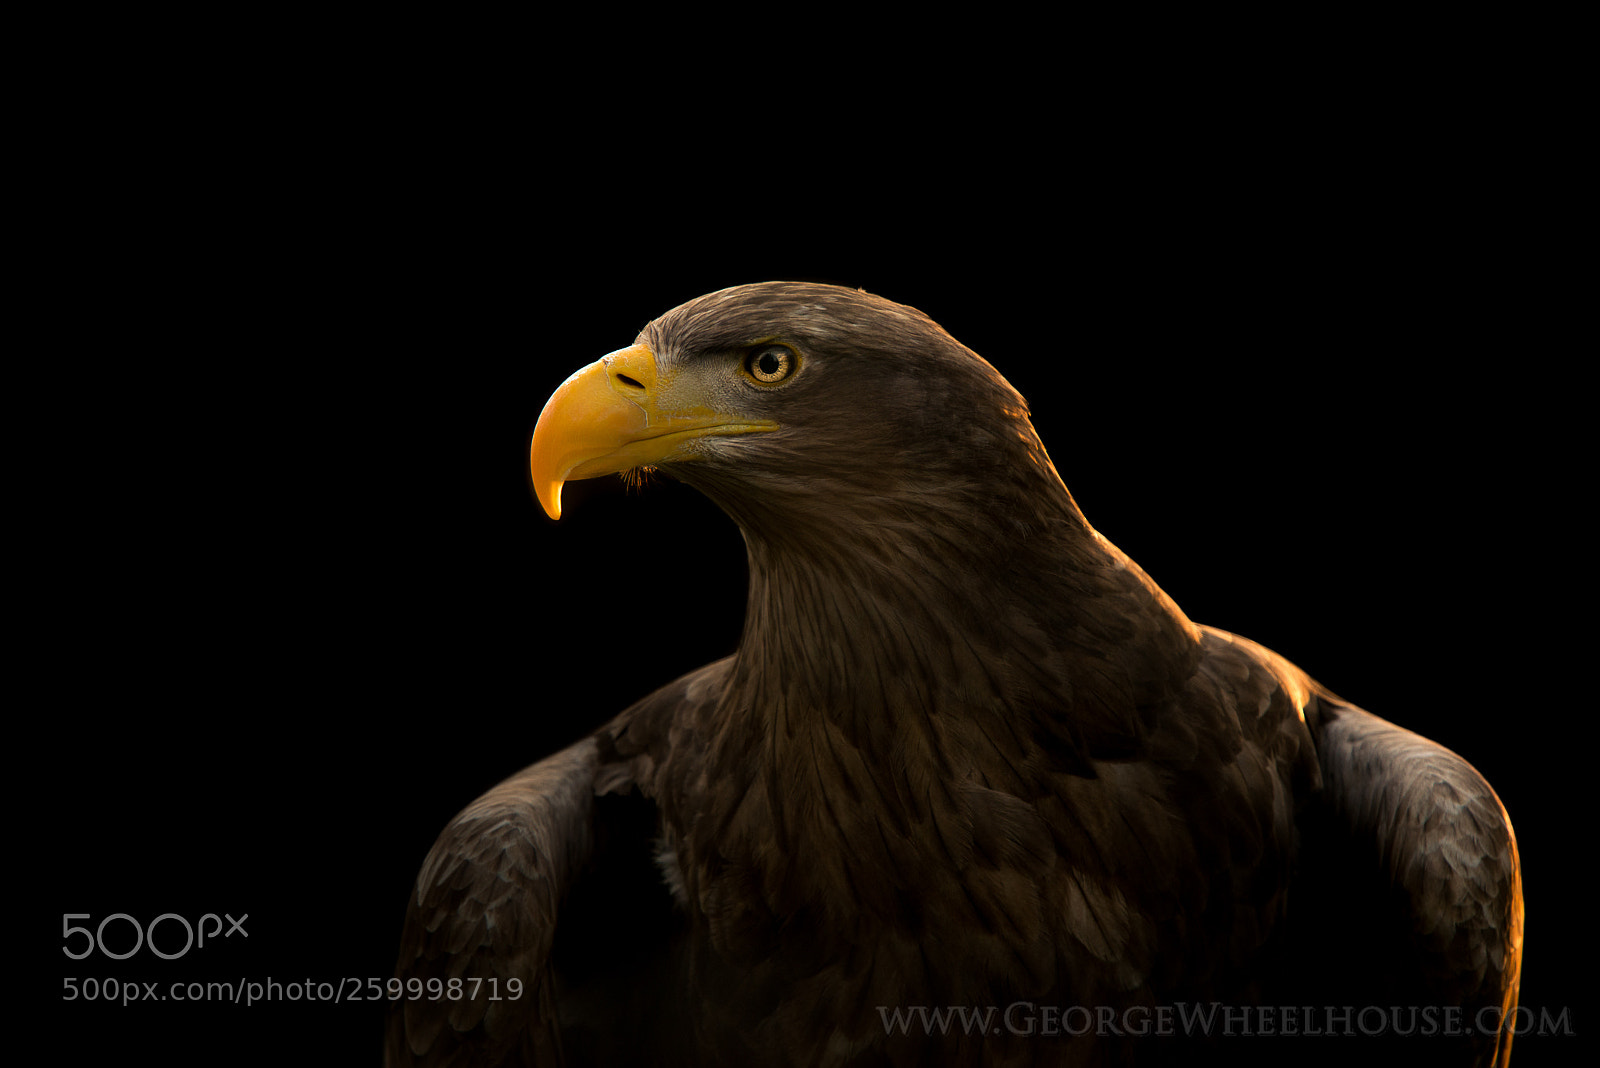 Nikon D800 sample photo. White-tailed sea eagle photography